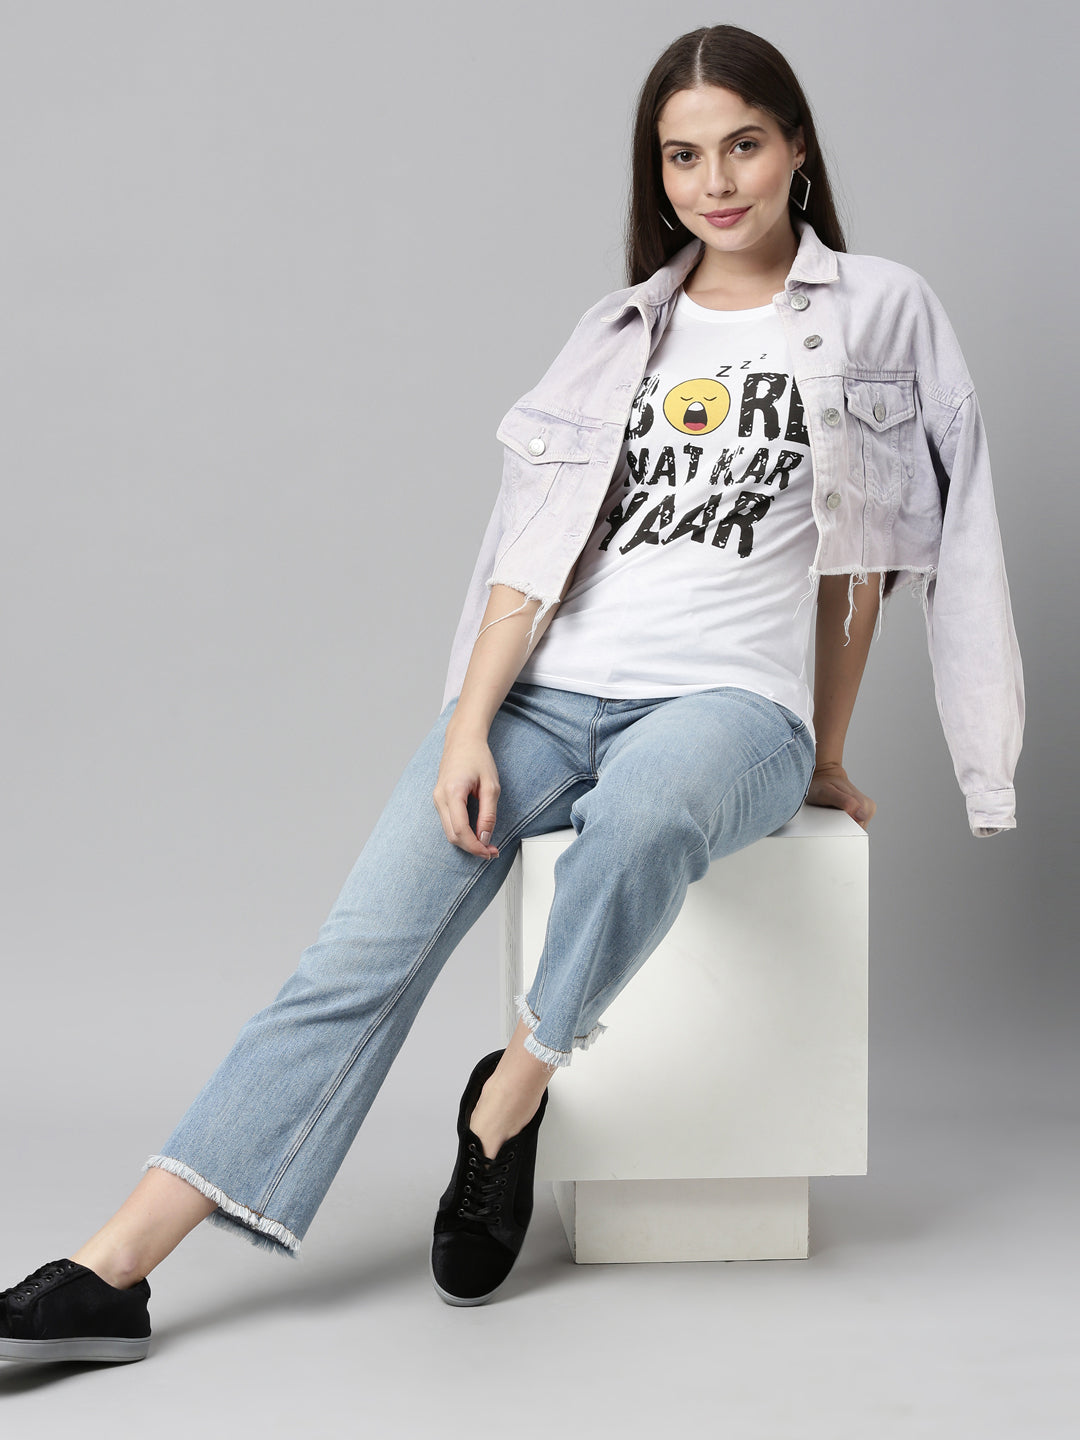 Bore Mat Kar Yaar T-Shirt Women's Graphic Tees Bushirt   